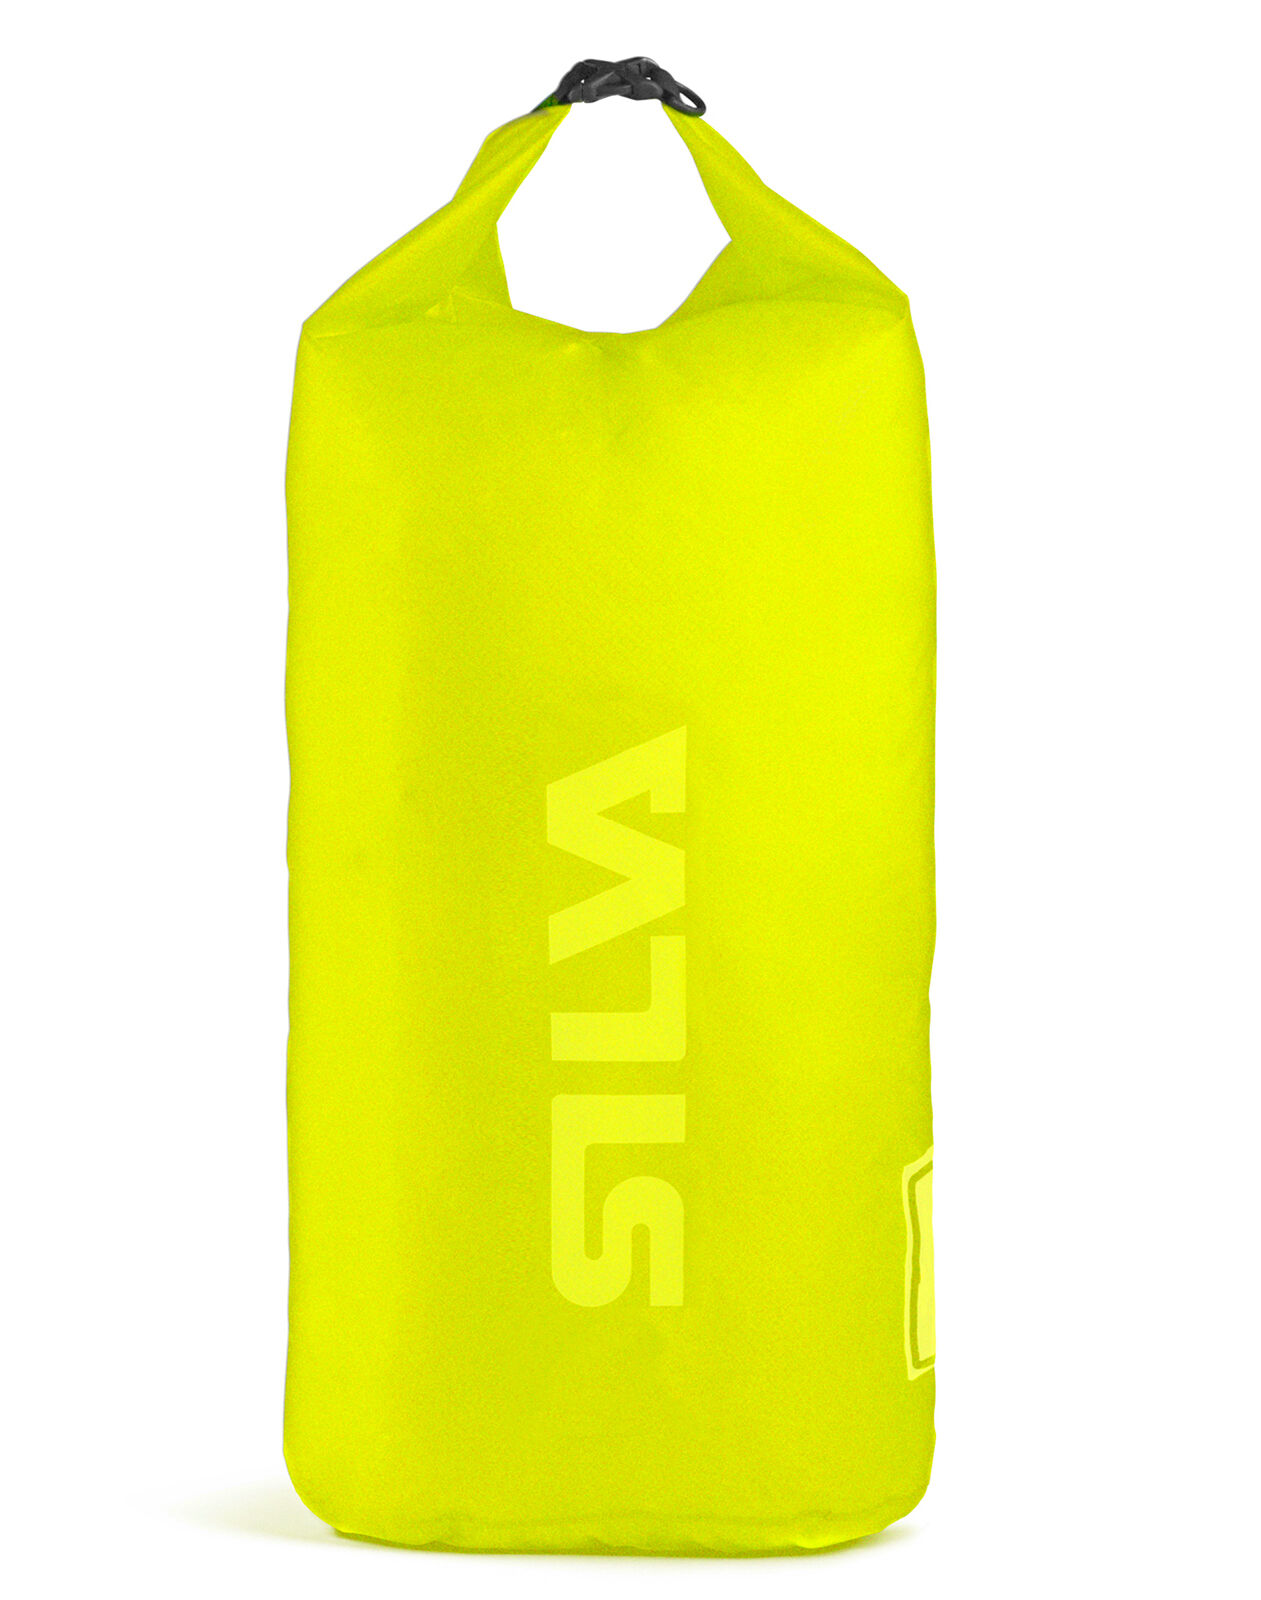 Silva Dry Bag 70D 3L vanntett pakkpose 37669 2018